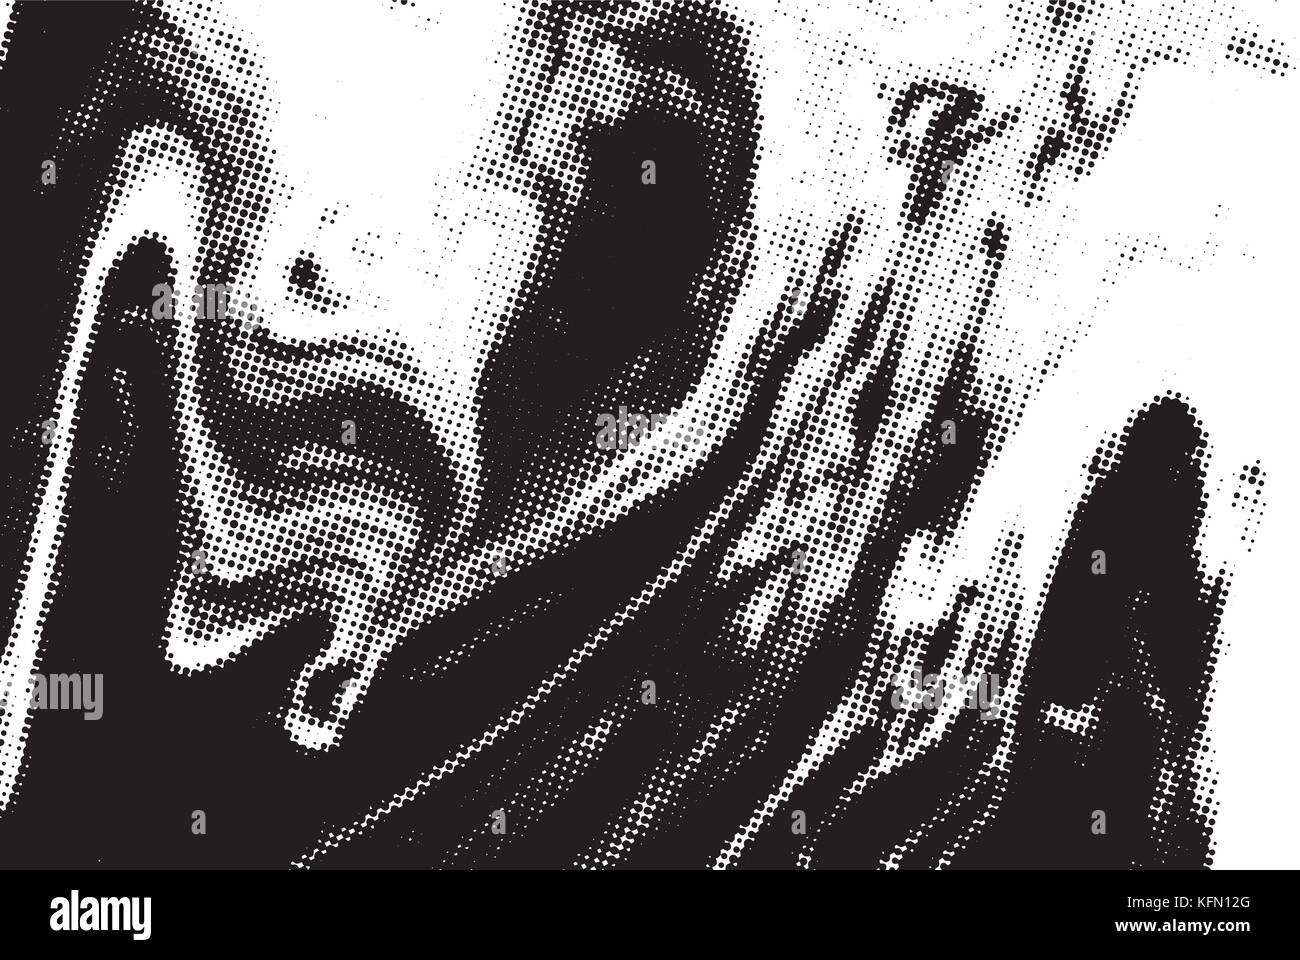 Le noir et blanc grunge texture. abstract background. vector halftone pattern. Illustration de Vecteur